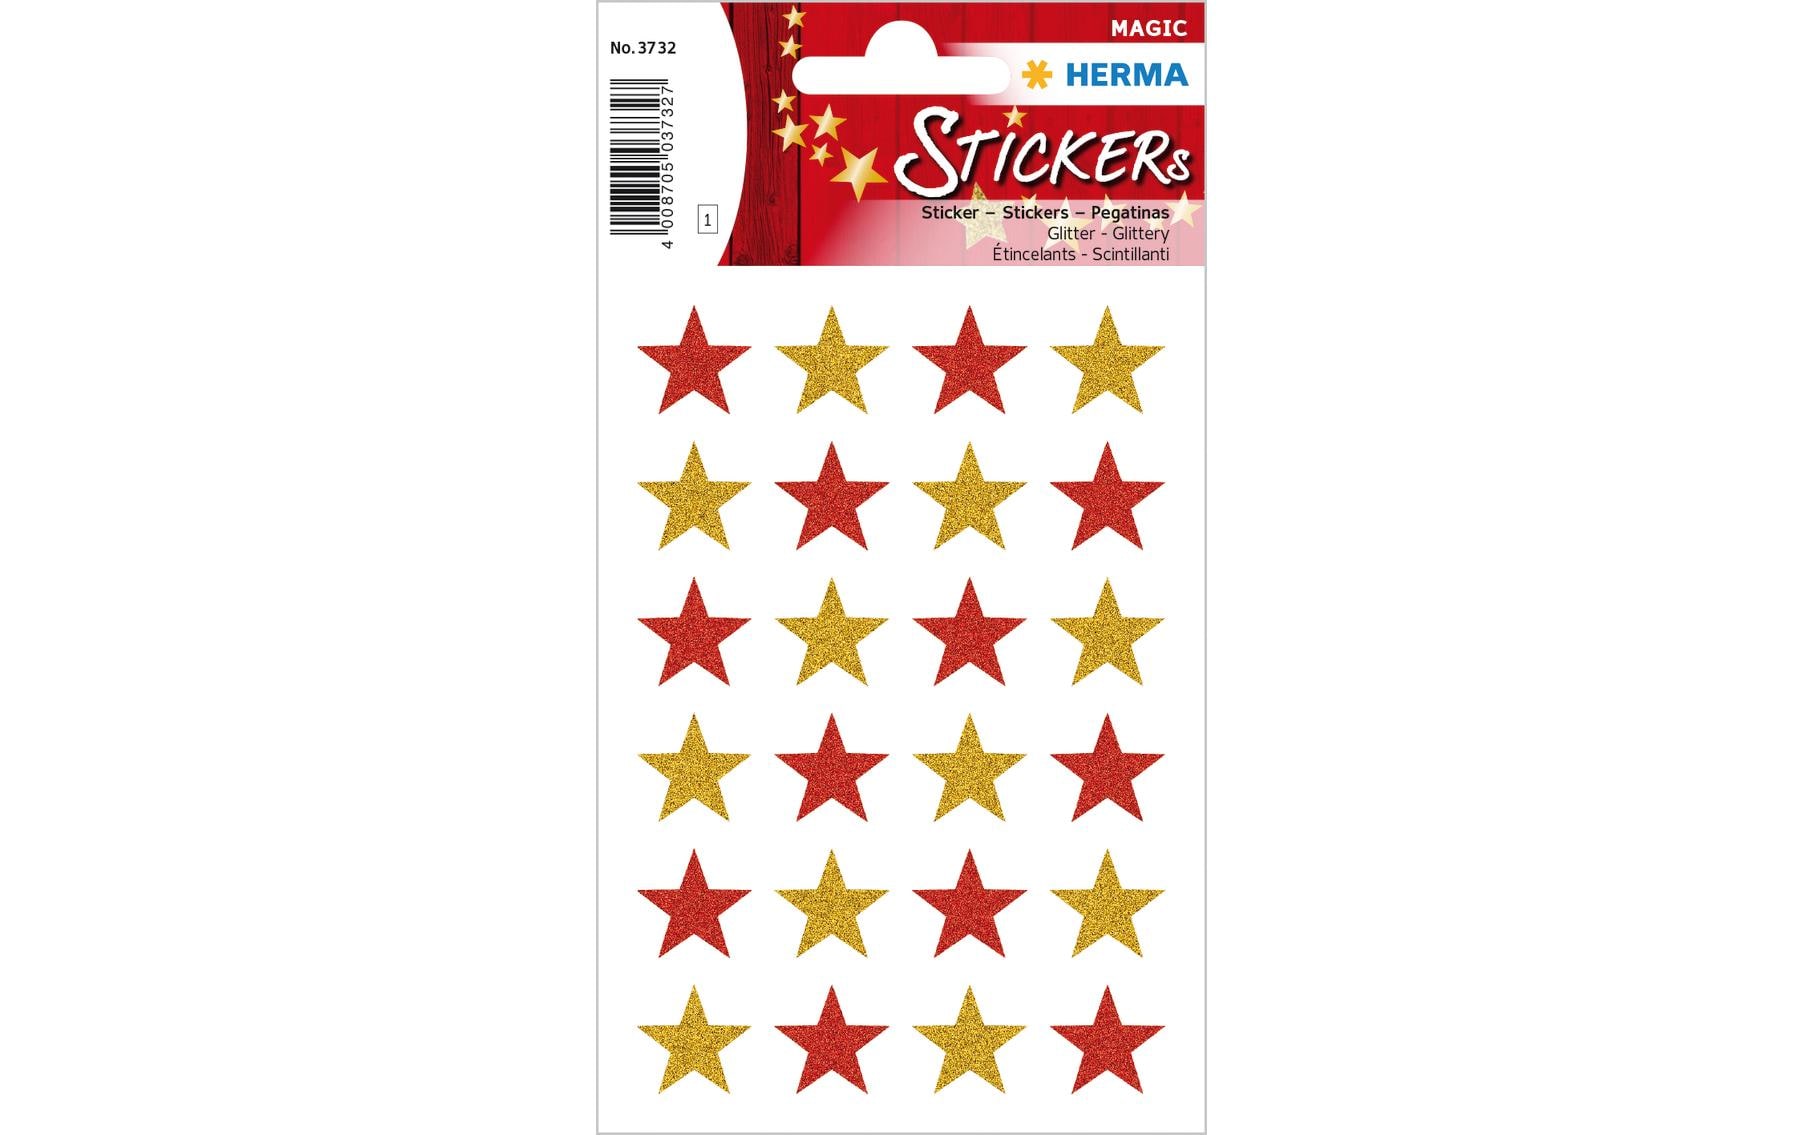 Herma Stickers Weihnachtssticker Sterne 1 Blatt à 24 Sticker